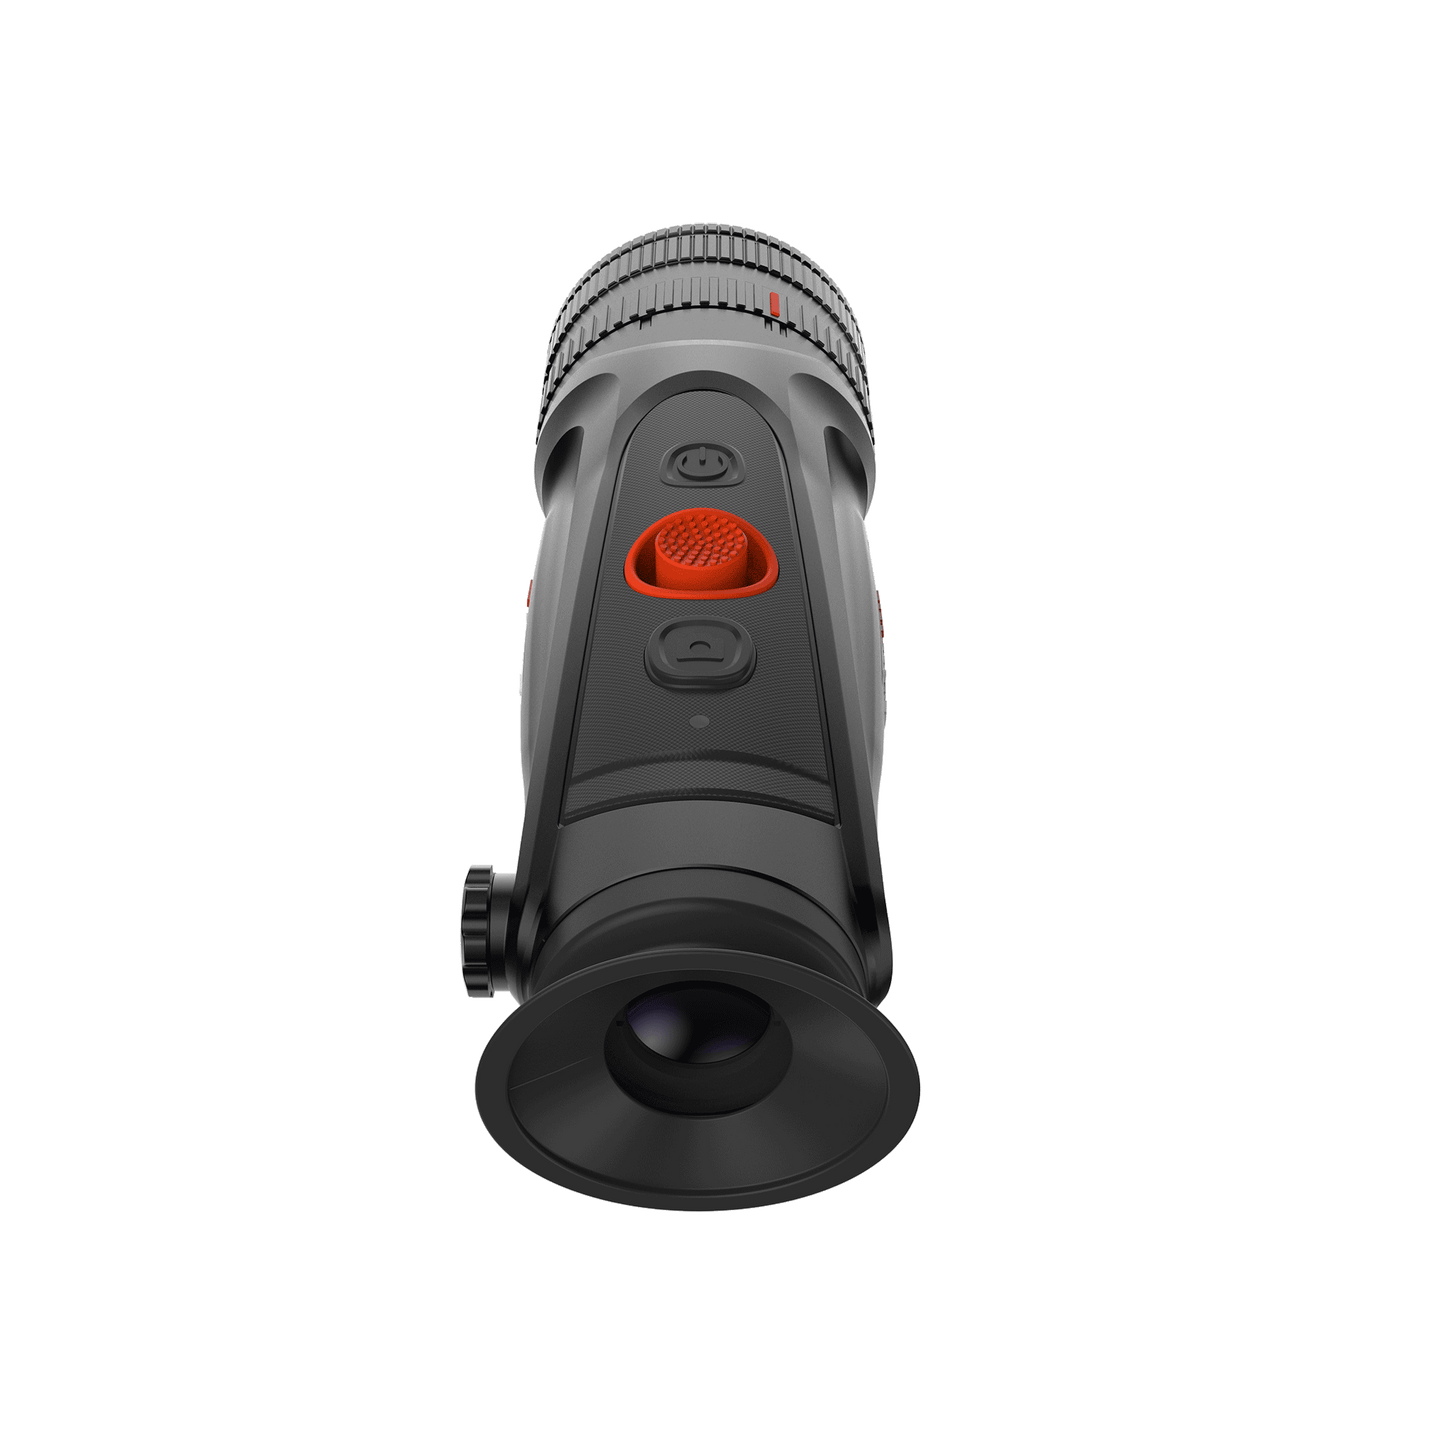 Cyclops 650D Thermal Imaging Monocular